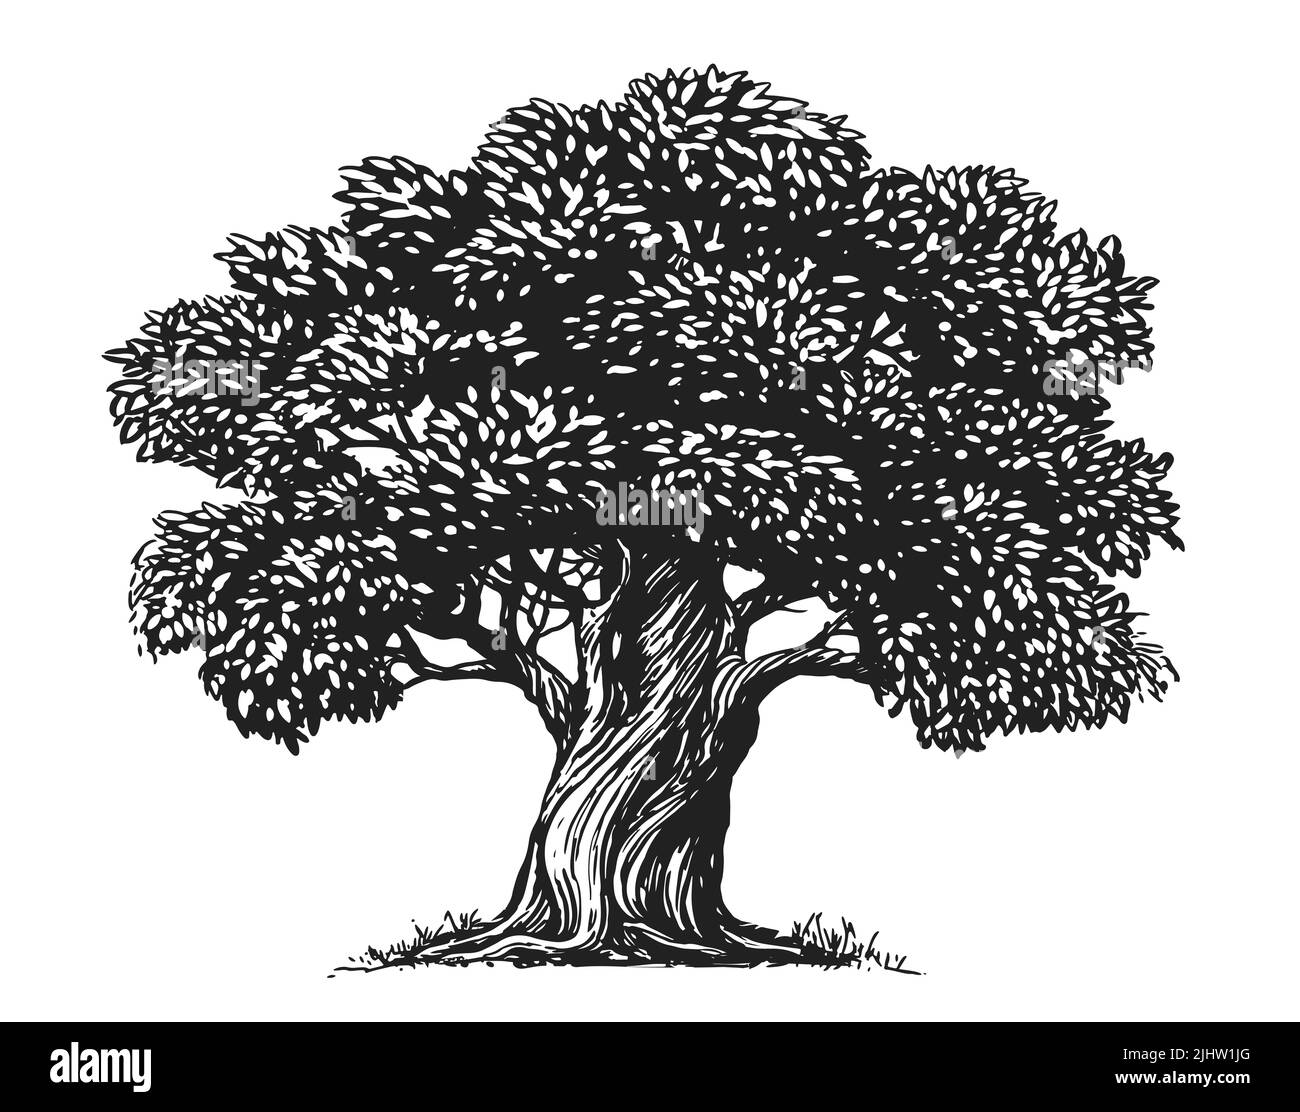 Esquissez l'Olive Tree isolé sur un fond blanc. Illustration dessinée à la main. Style vintage Banque D'Images